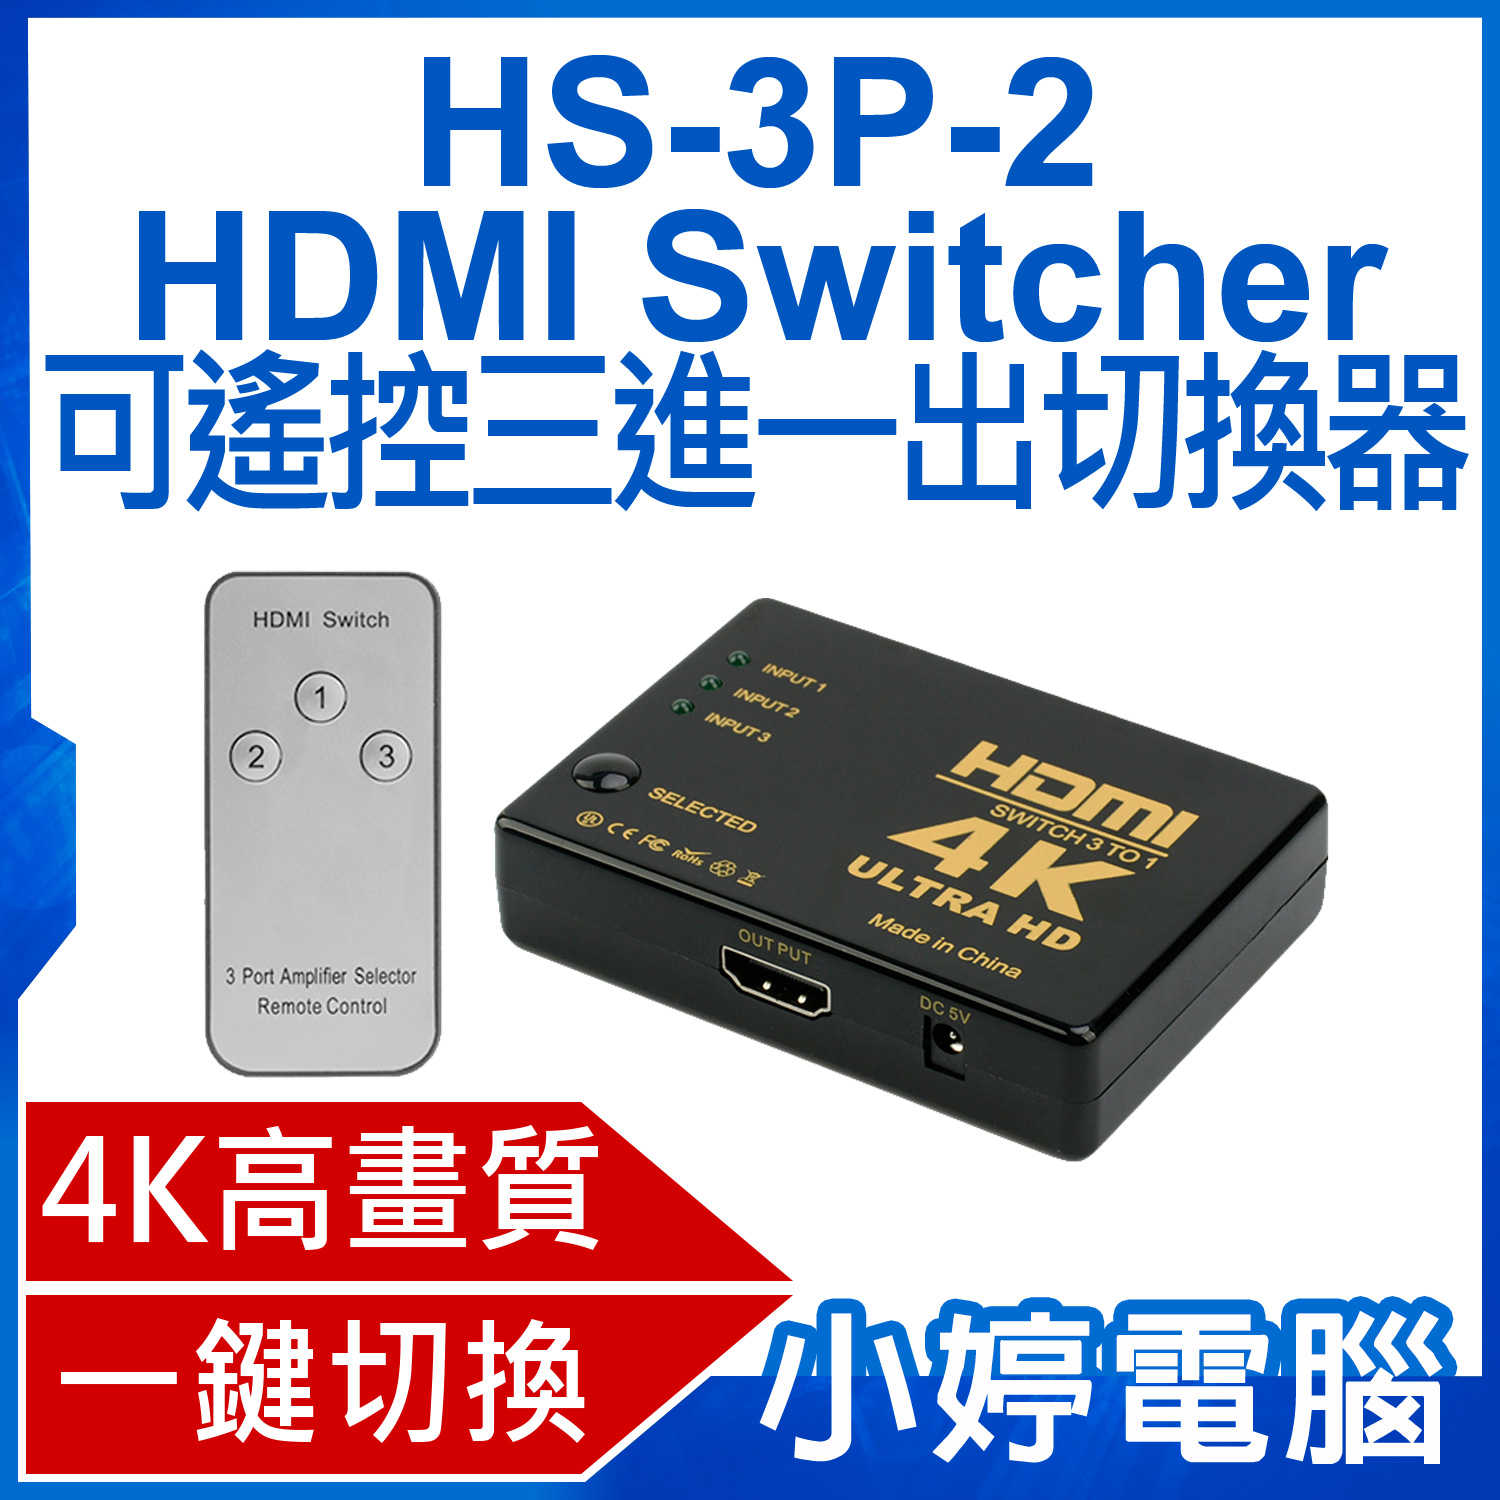 【小婷電腦】HS-3P-2 HDMI Switcher 可遙控三進一出切換器 4K高畫質 即插即用